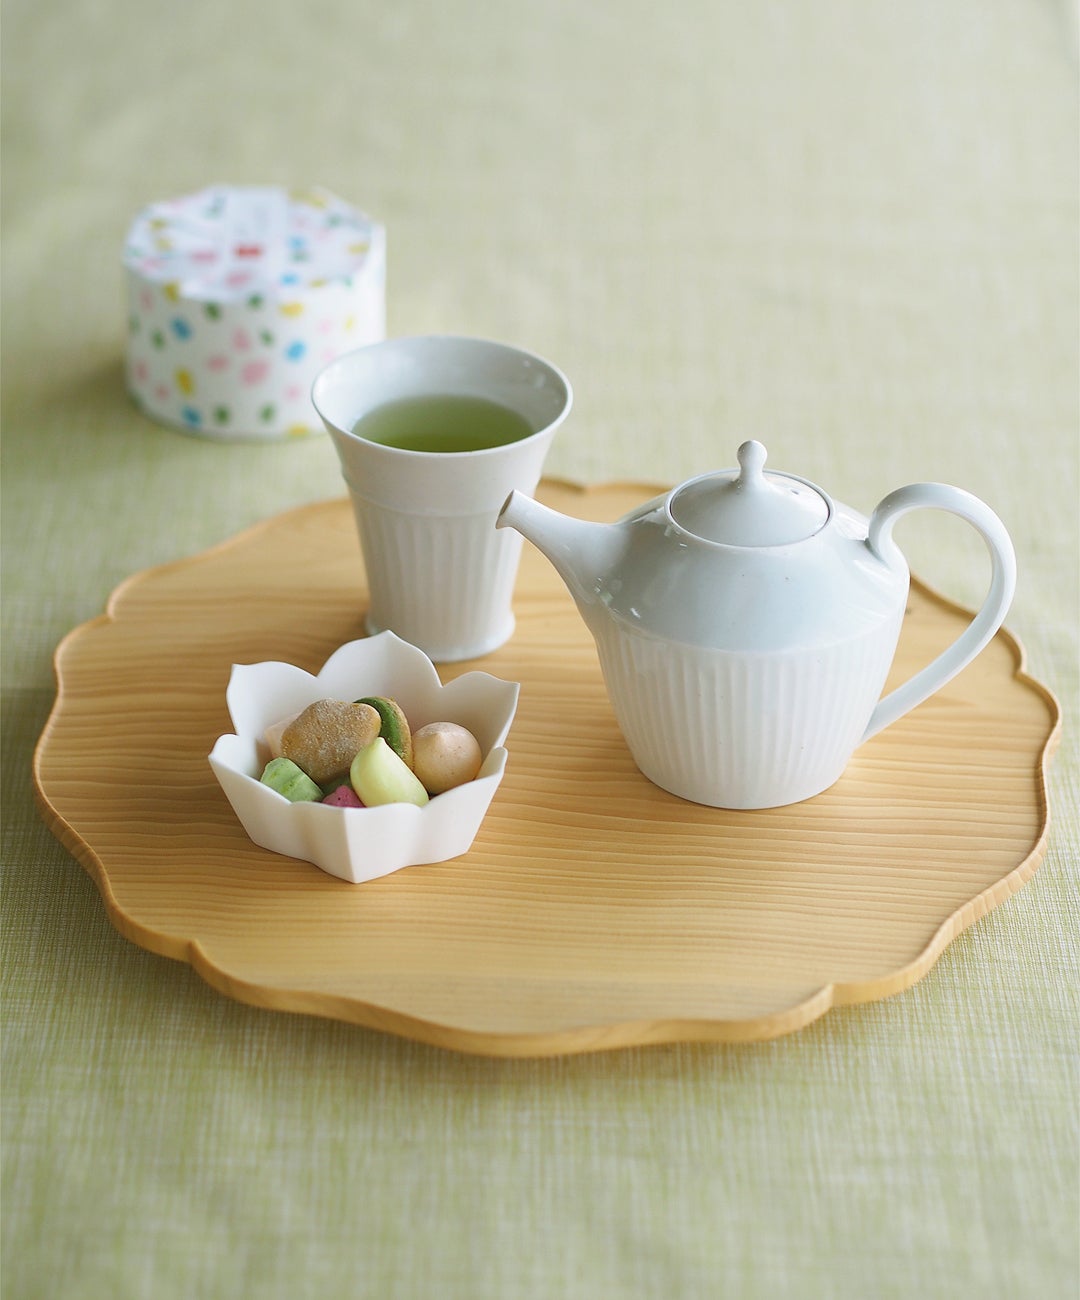 若杉聖子さんの小鉢』と『村上雄一さんのお茶器』で「朝菓子